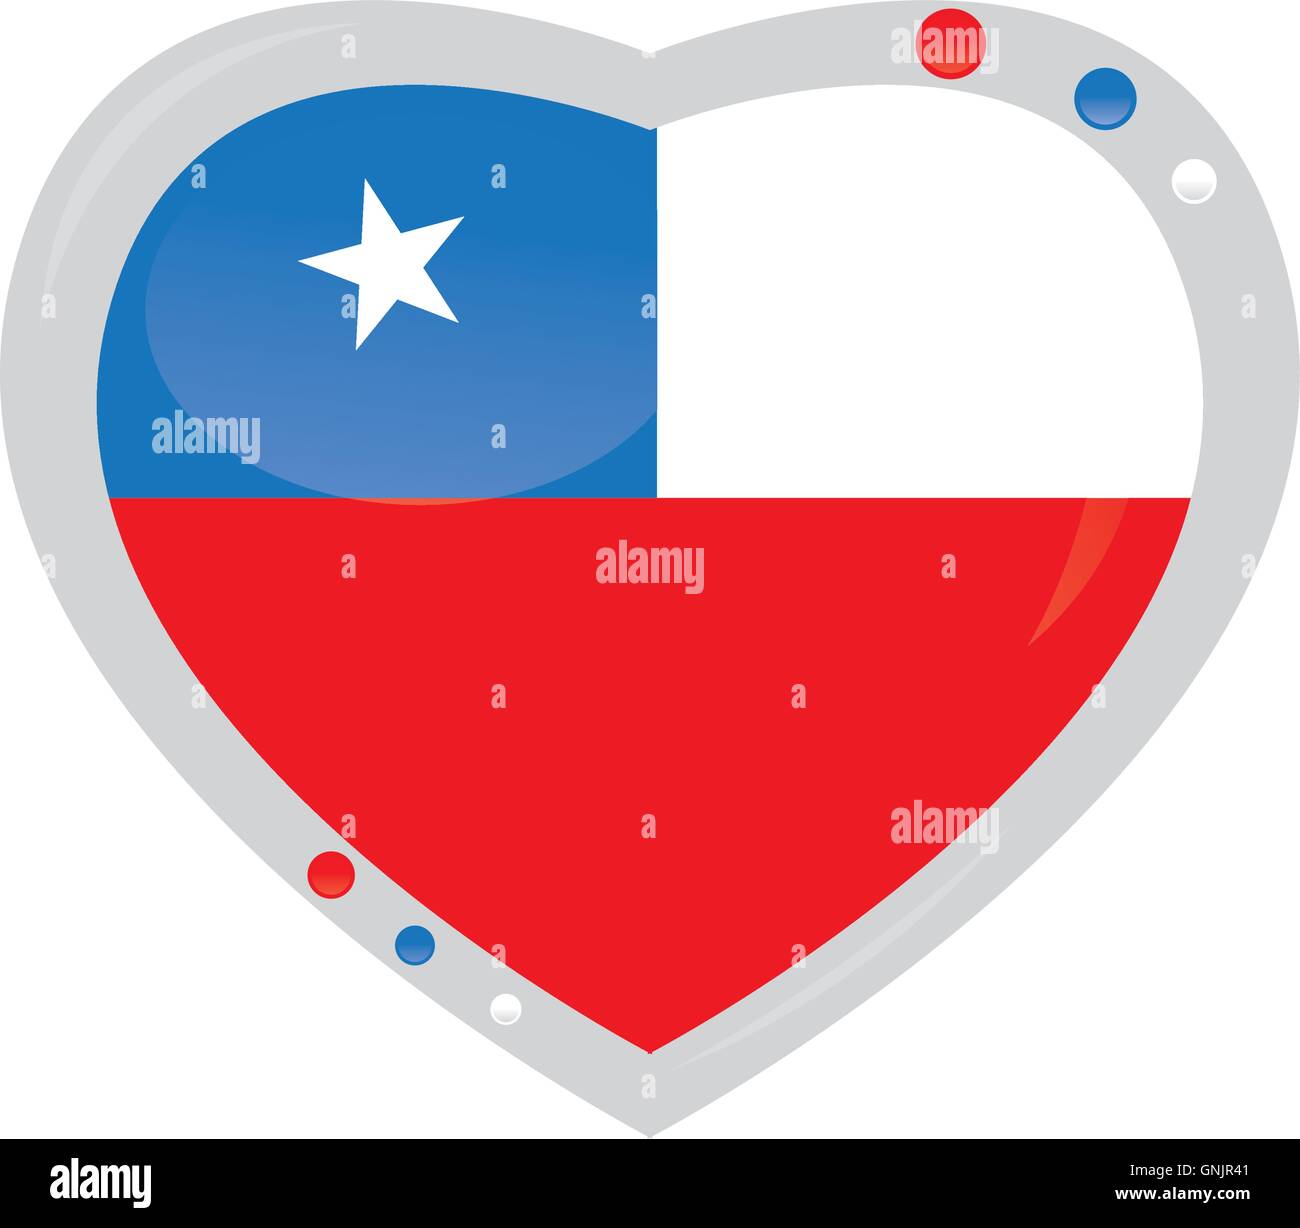 Isolierte Herz-Form mit der Flagge von Chile auf weißem Hintergrund Stock Vektor